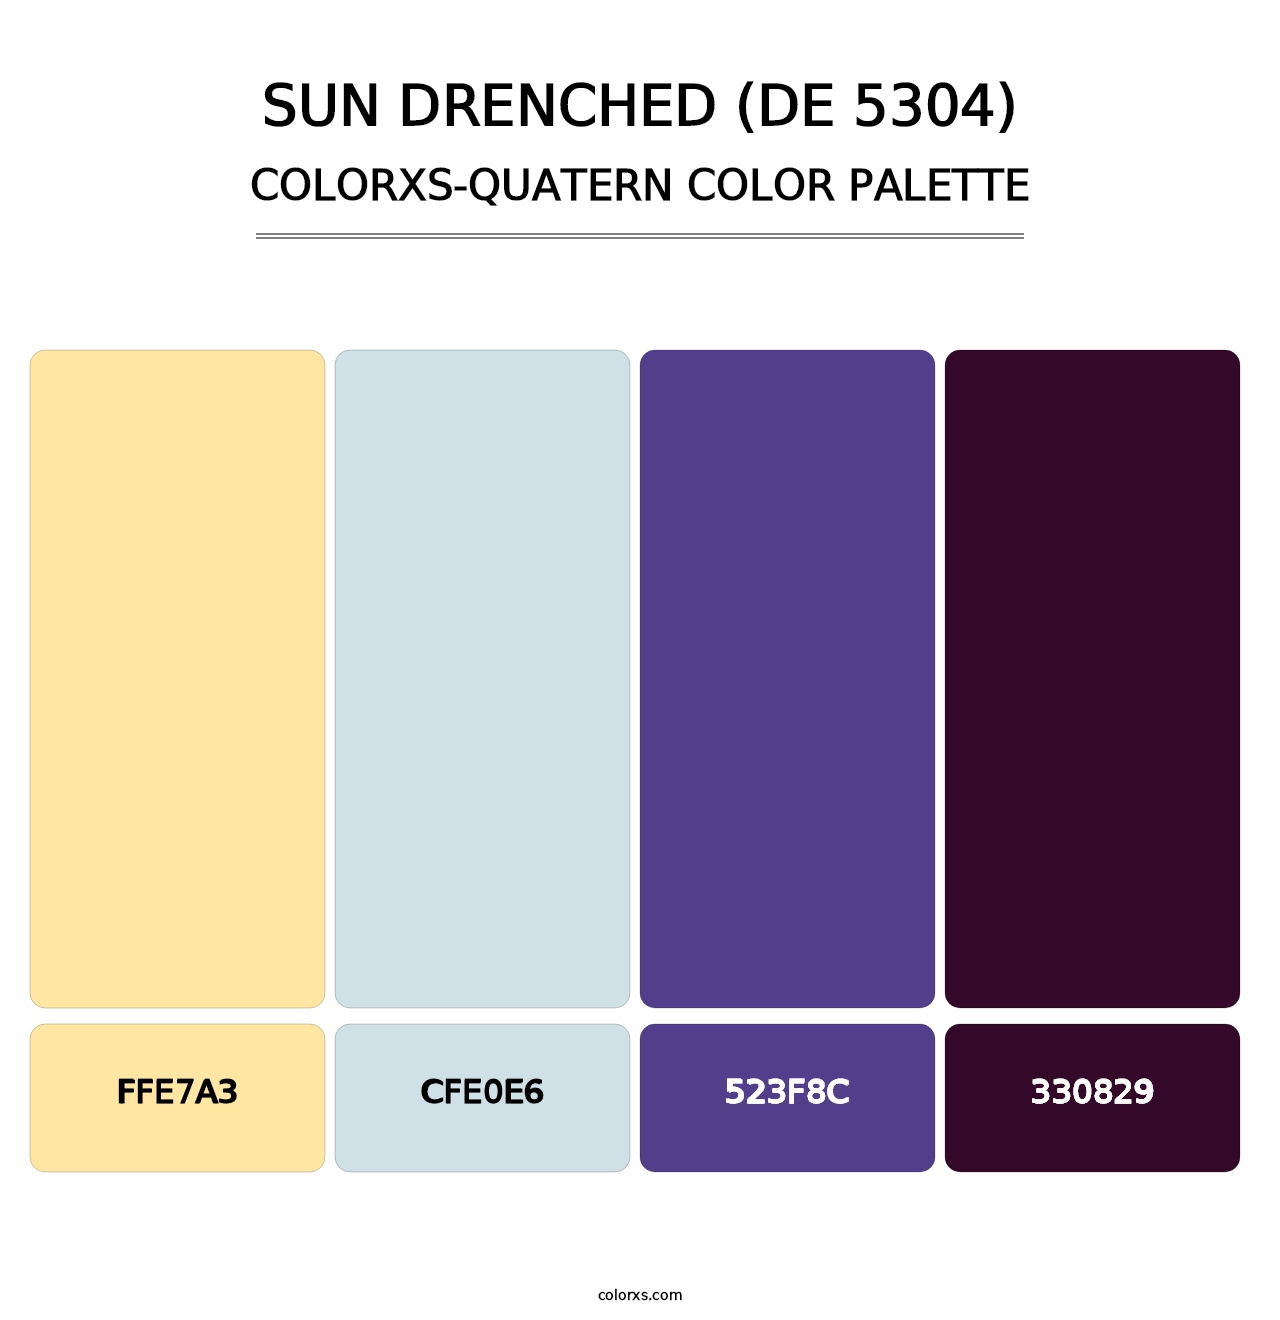 Sun Drenched (DE 5304) - Colorxs Quatern Palette